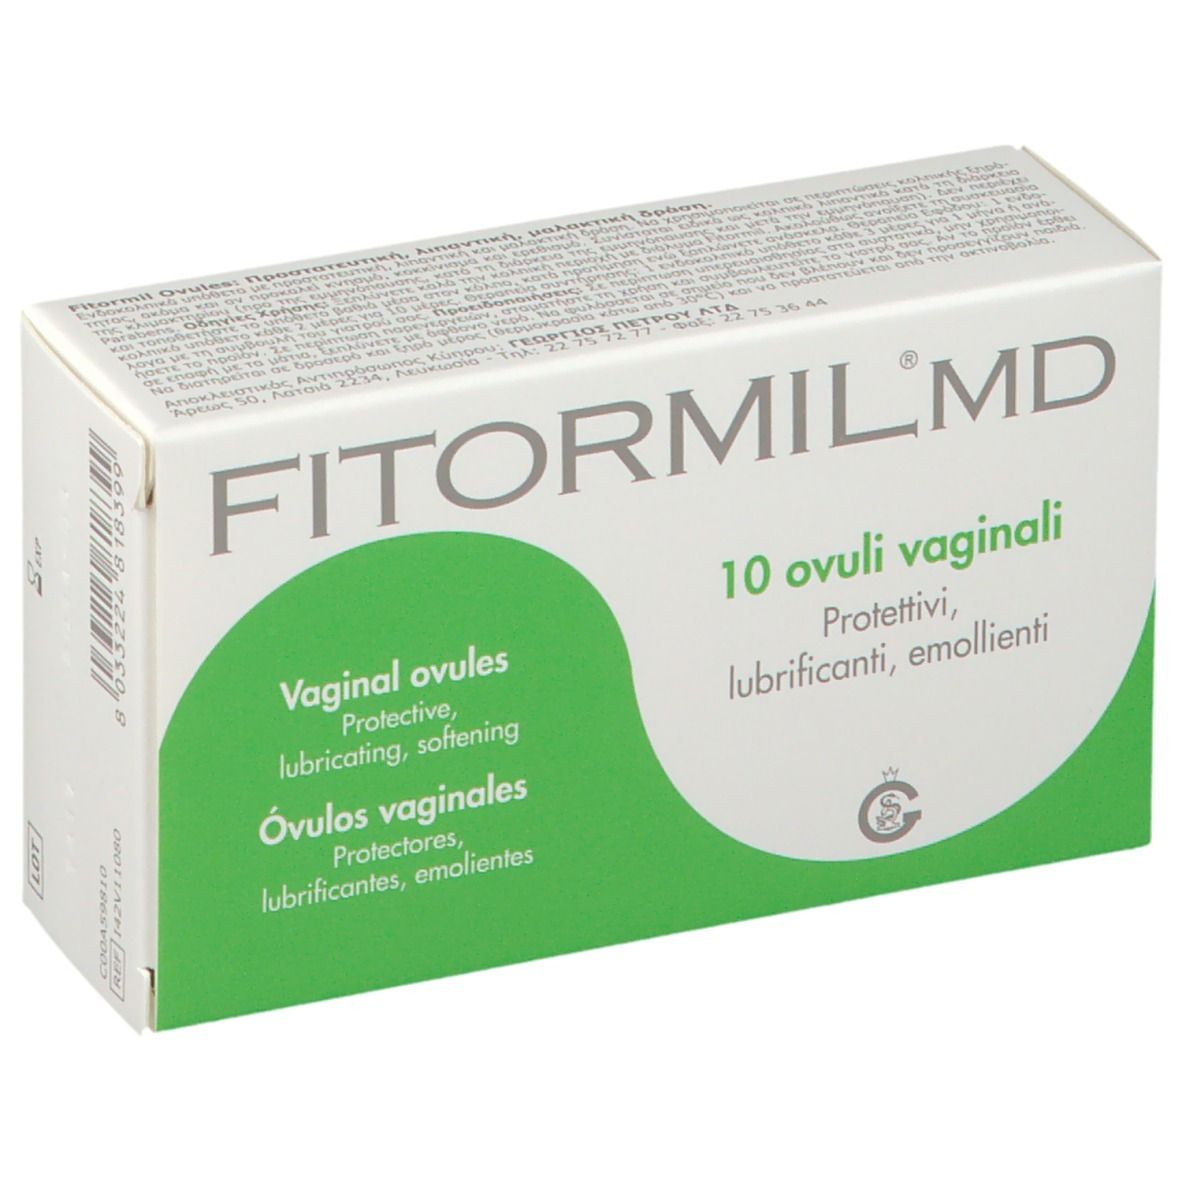 Fitormil® MD Ovuli Vaginali